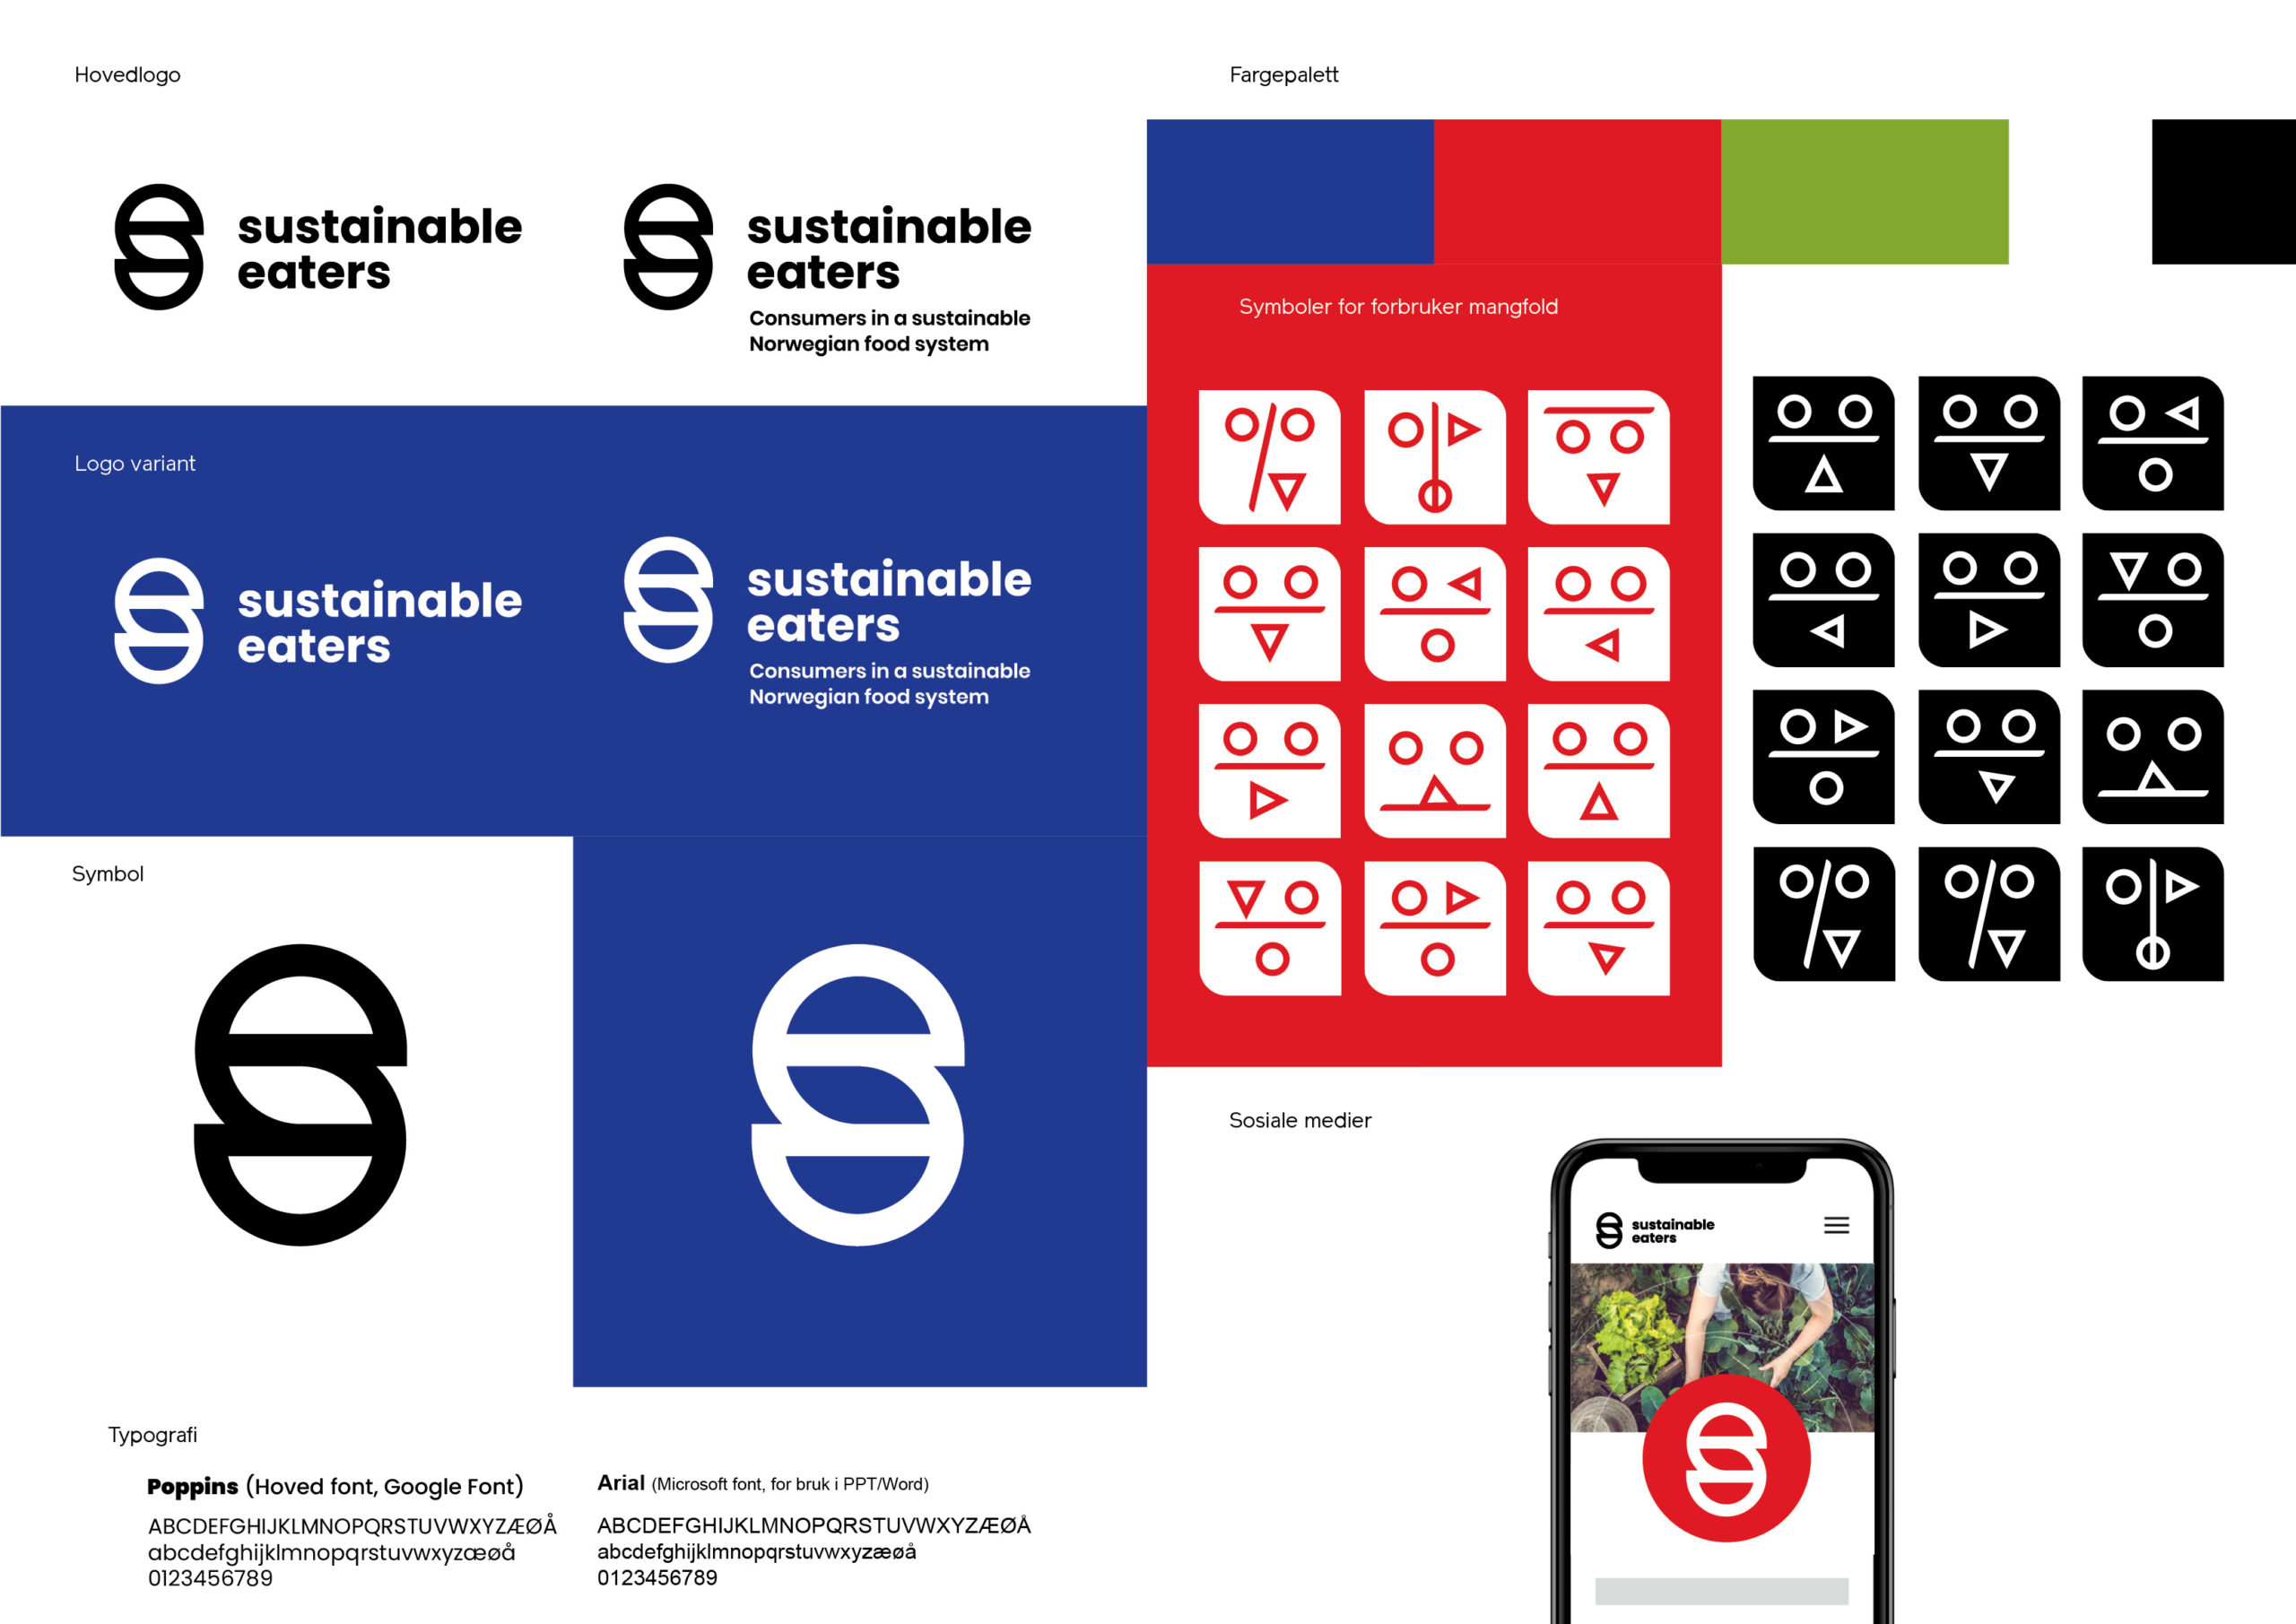 Sustainable eaters visuell identitet verktøy kasse, med logoer, fargepalett, symboler, typografi og implementeringeksempel.